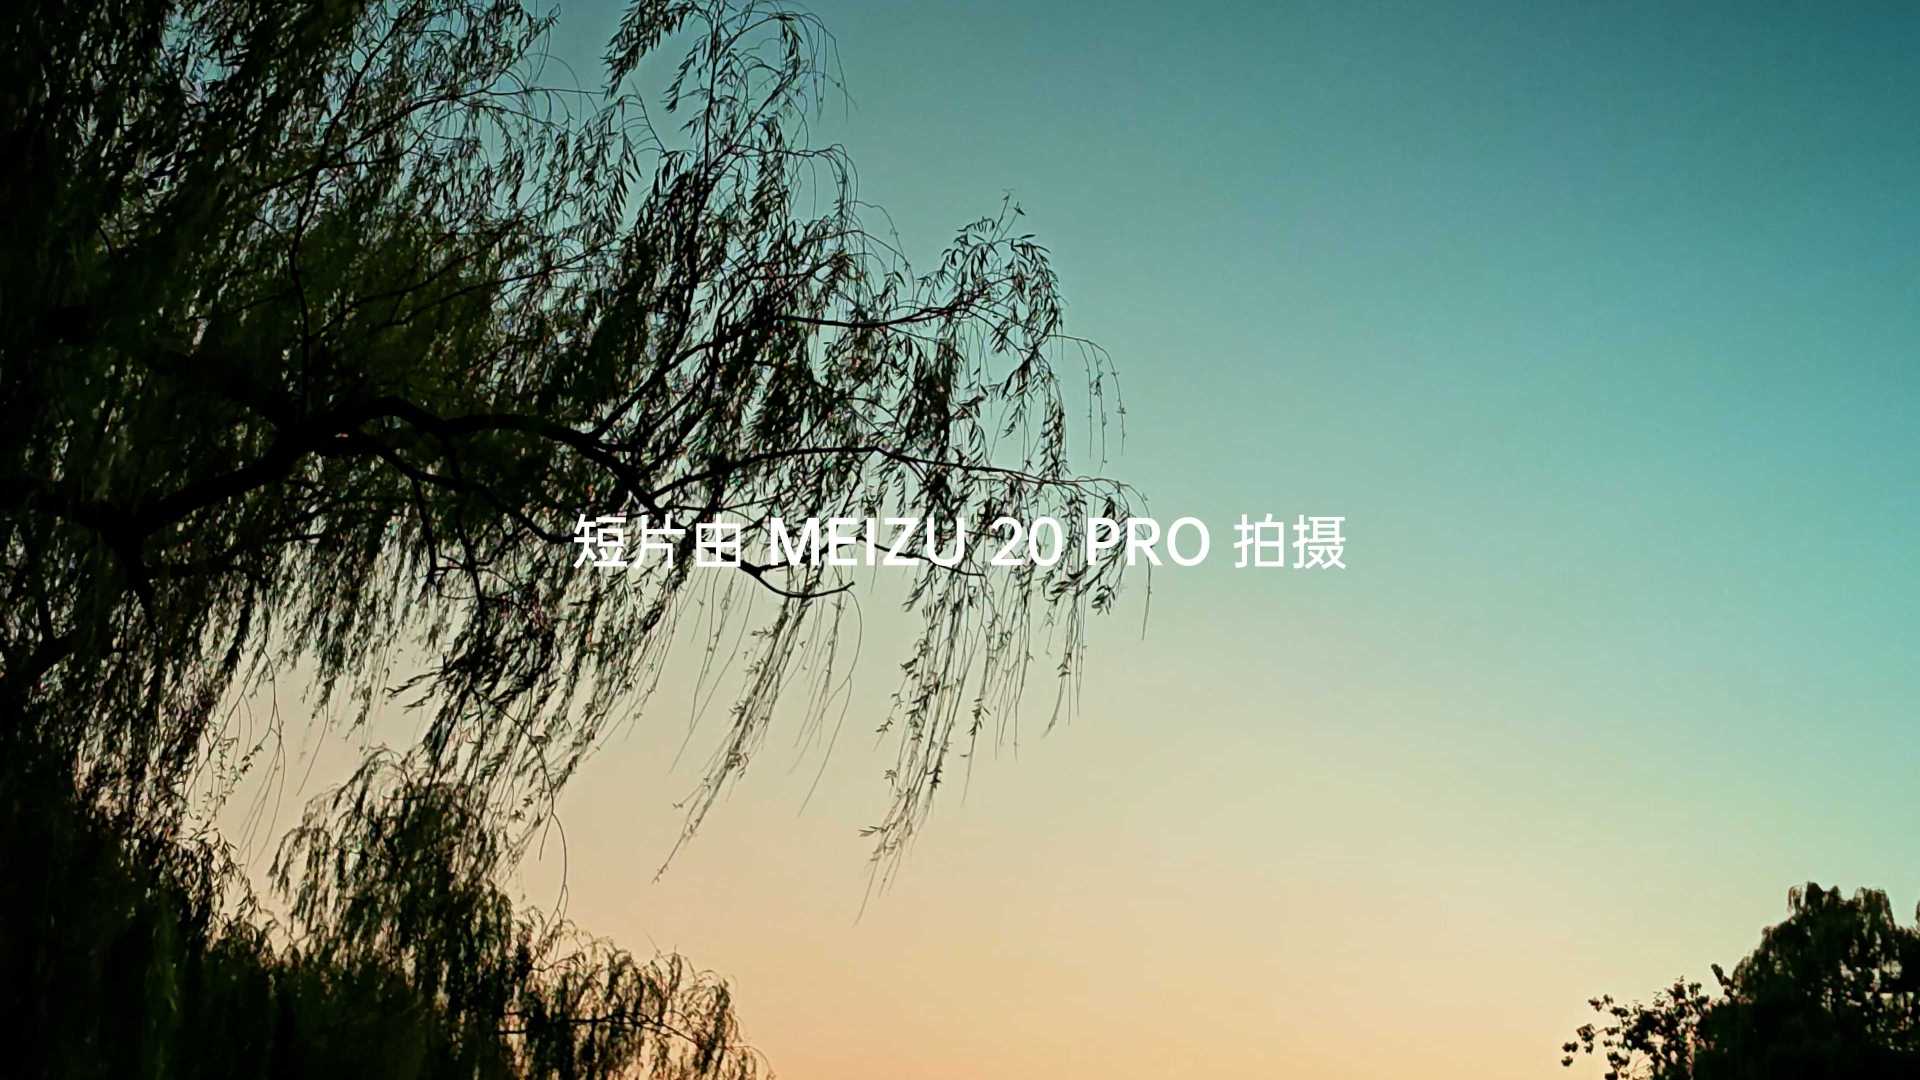 如梦令丨Meizu 20 pro拍摄